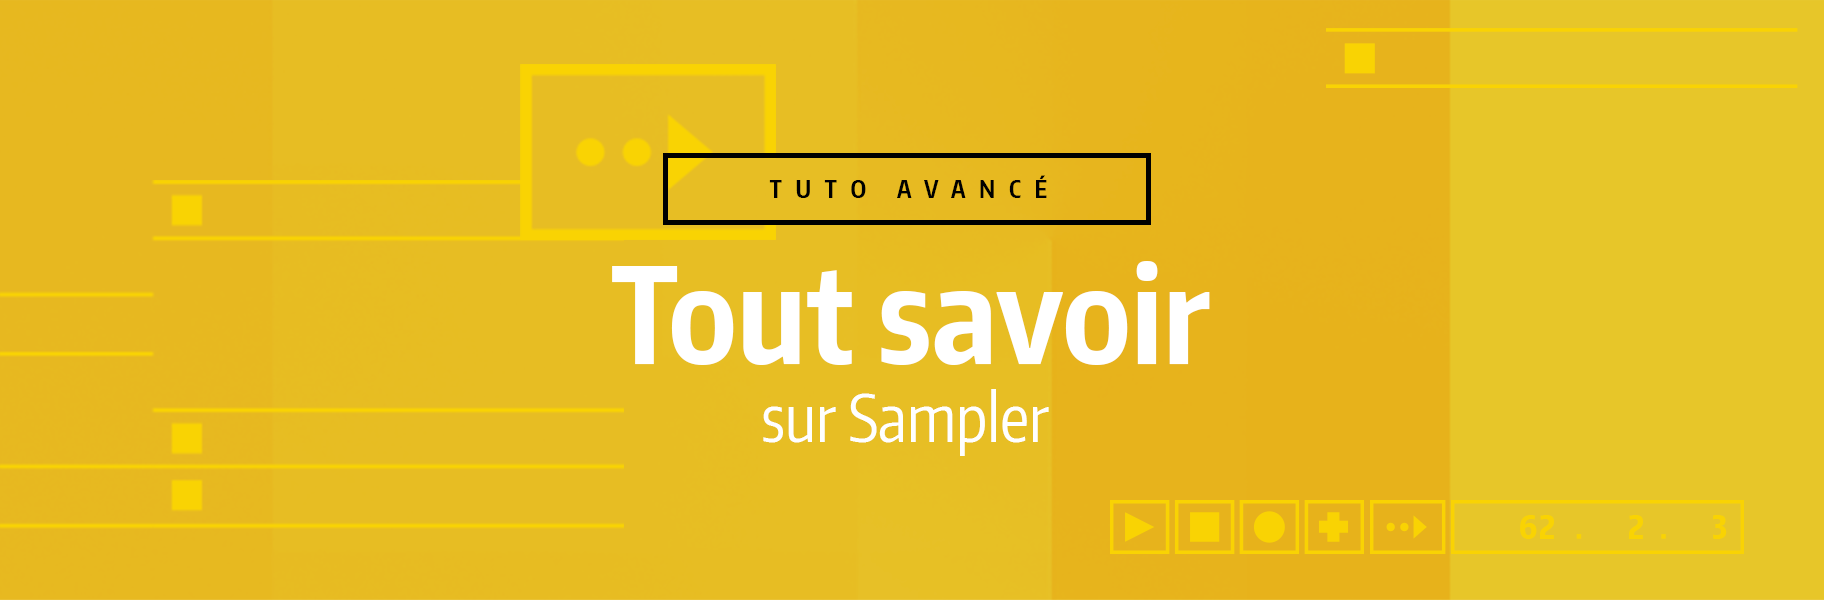 Tutoriel Ableton Live - Tout savoir sur Sampler en 12 minutes